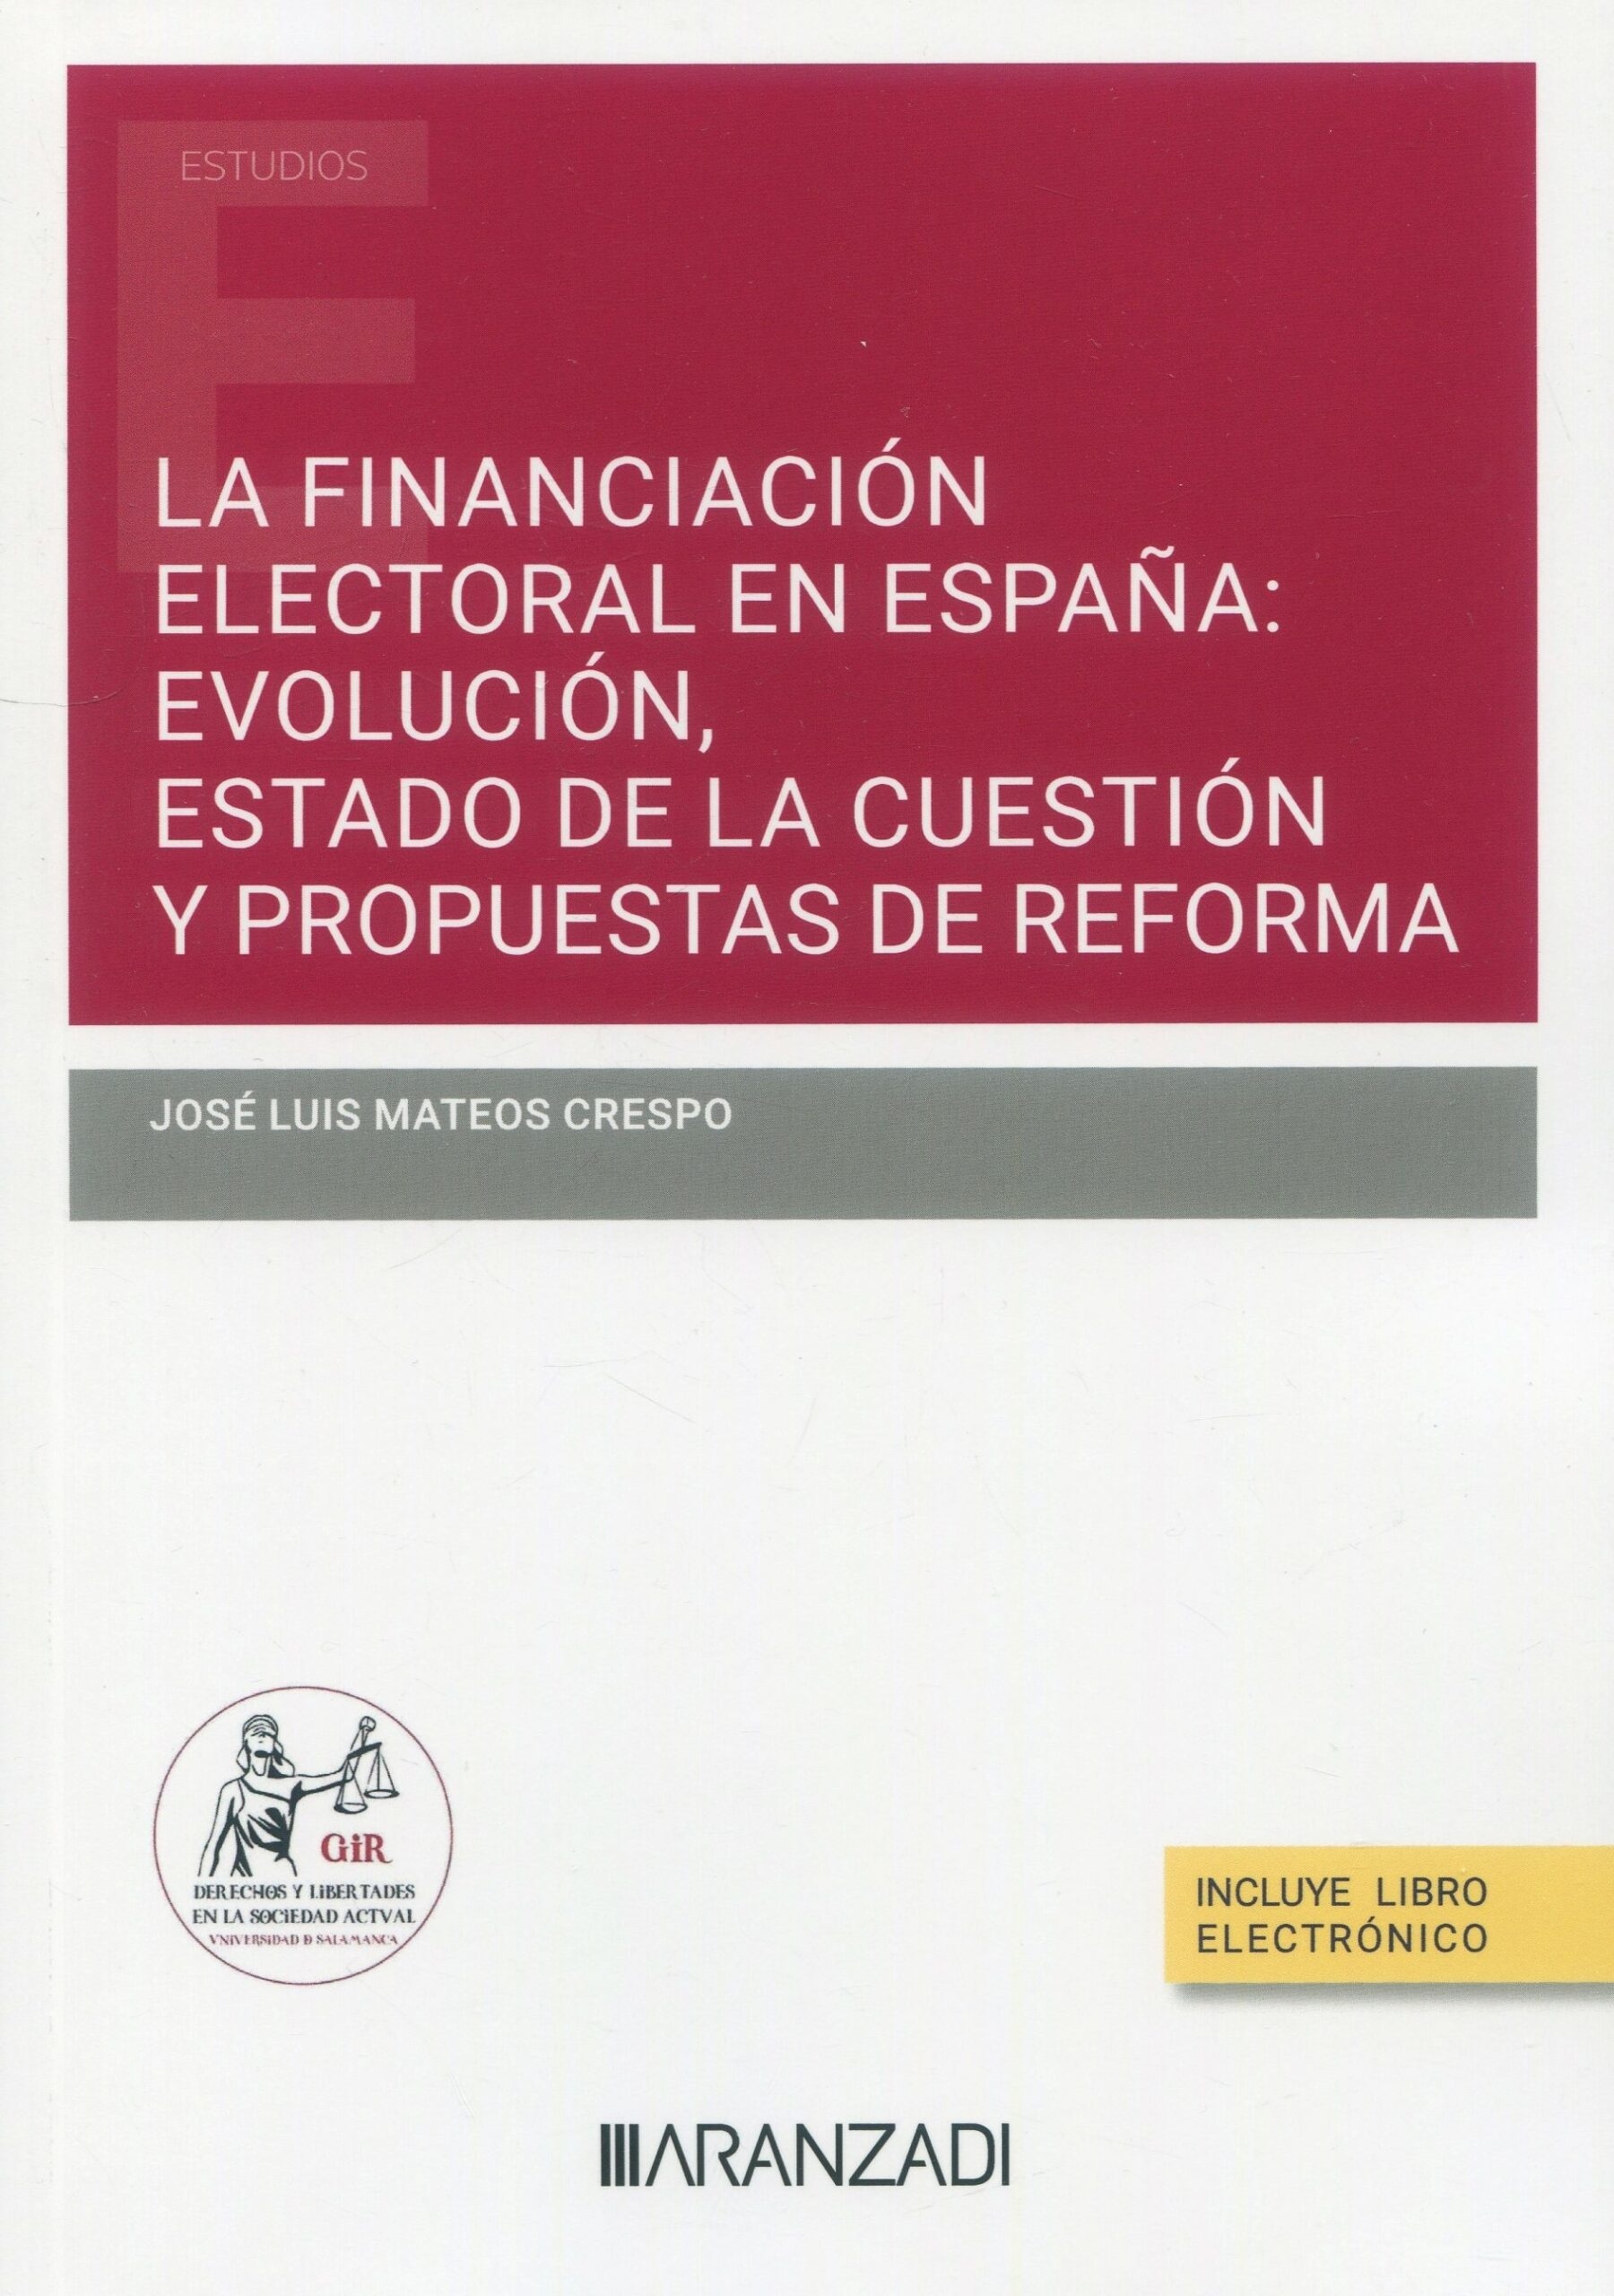 La financiación electoral en España: evolución, estado de la cuestión y propuestas de reforma